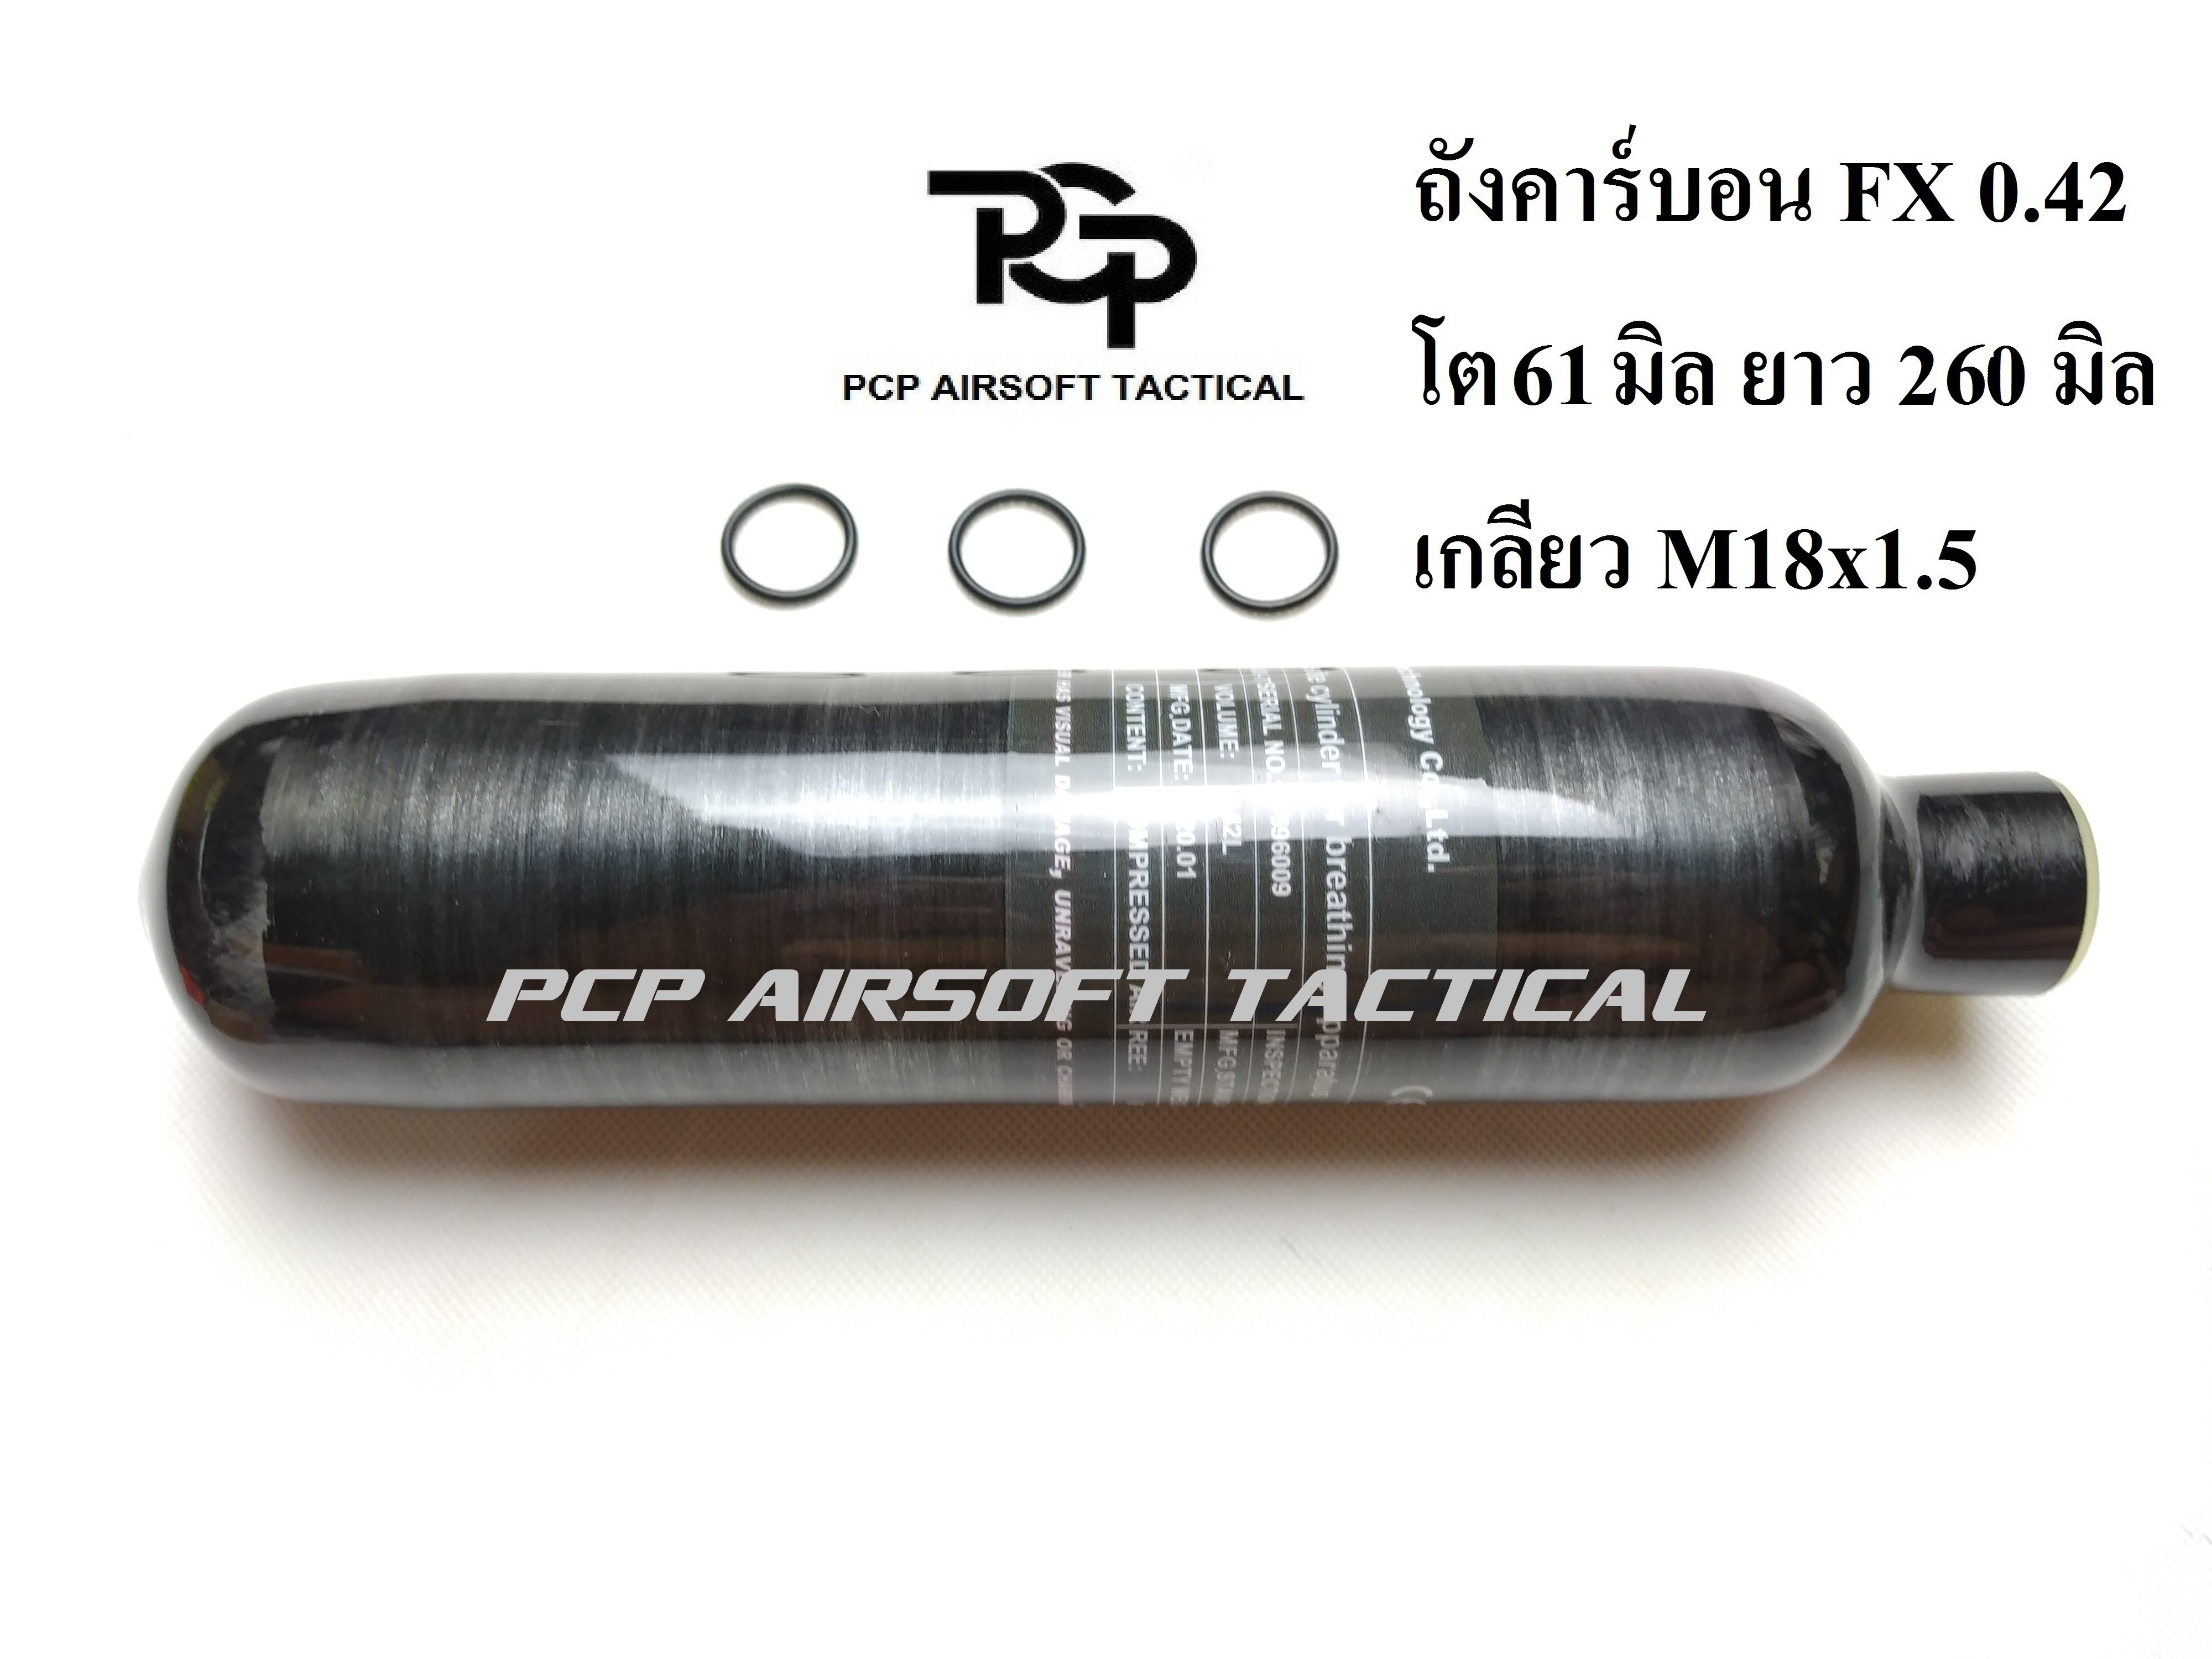 ถังคาร์บอน สีดำ M18x1.5 4350psi 300 bar Paintball,PCP Carbon Tank Air Cyclinder Bottle Black